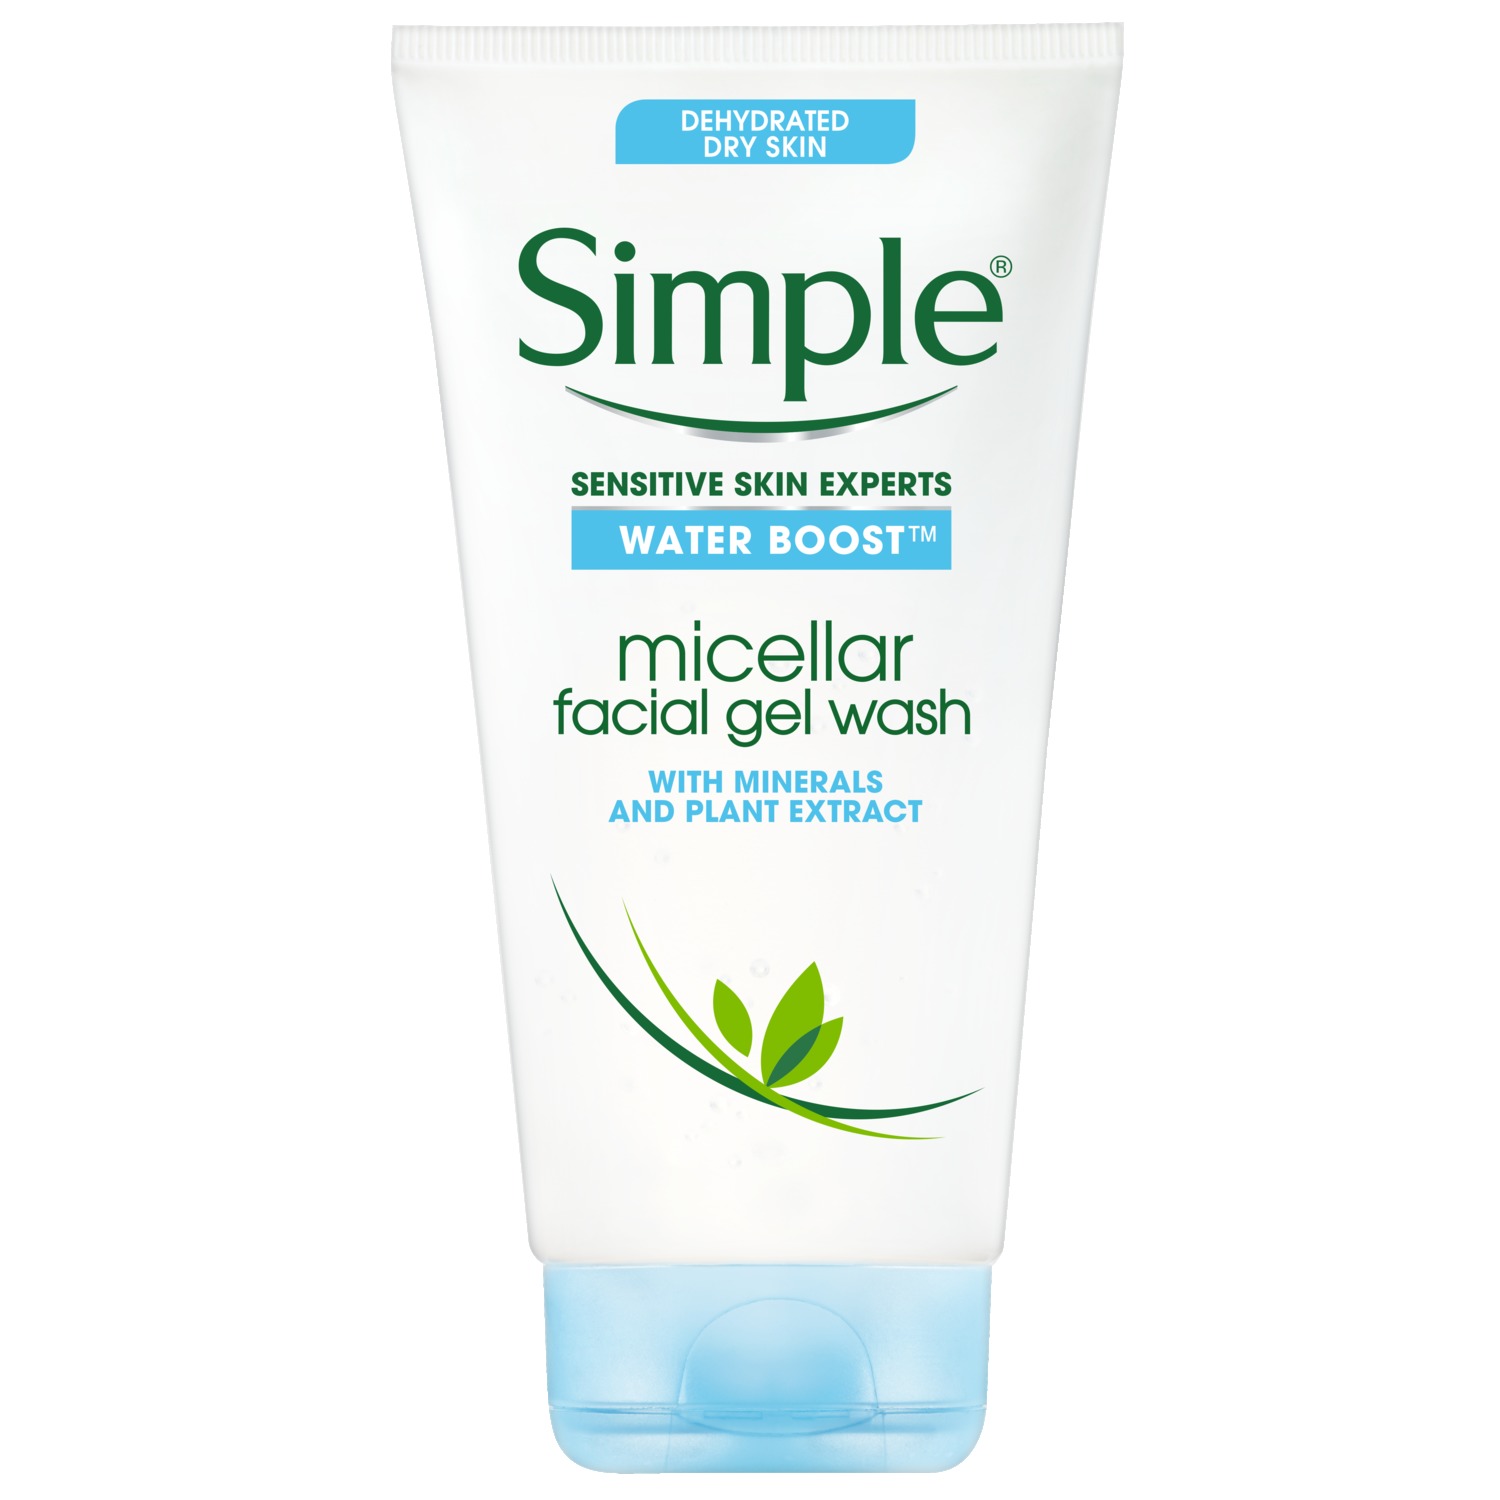 Simple Water Boost Sensitive Skin Micellar Facial Gel Wash, 5 oz - image 1 of 9